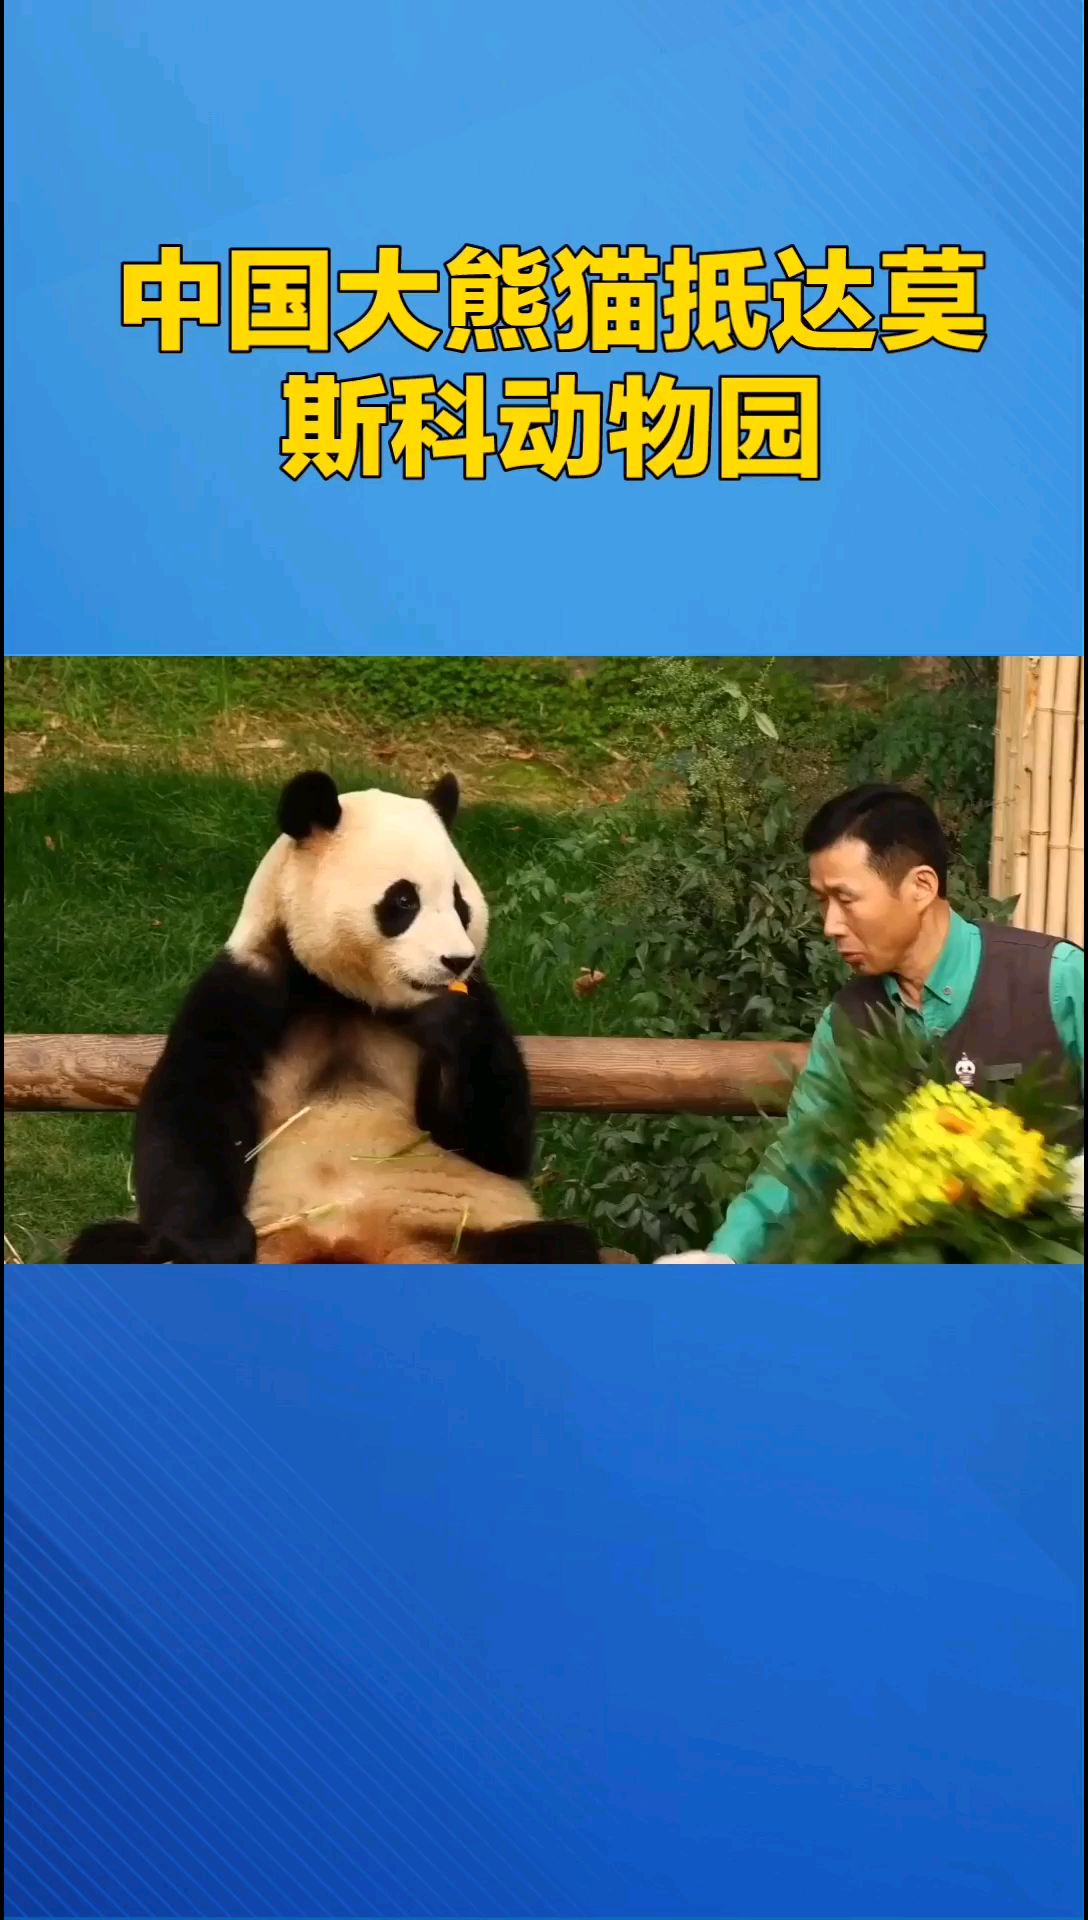 俄罗斯莫斯科·旅俄大熊猫与游客正式见